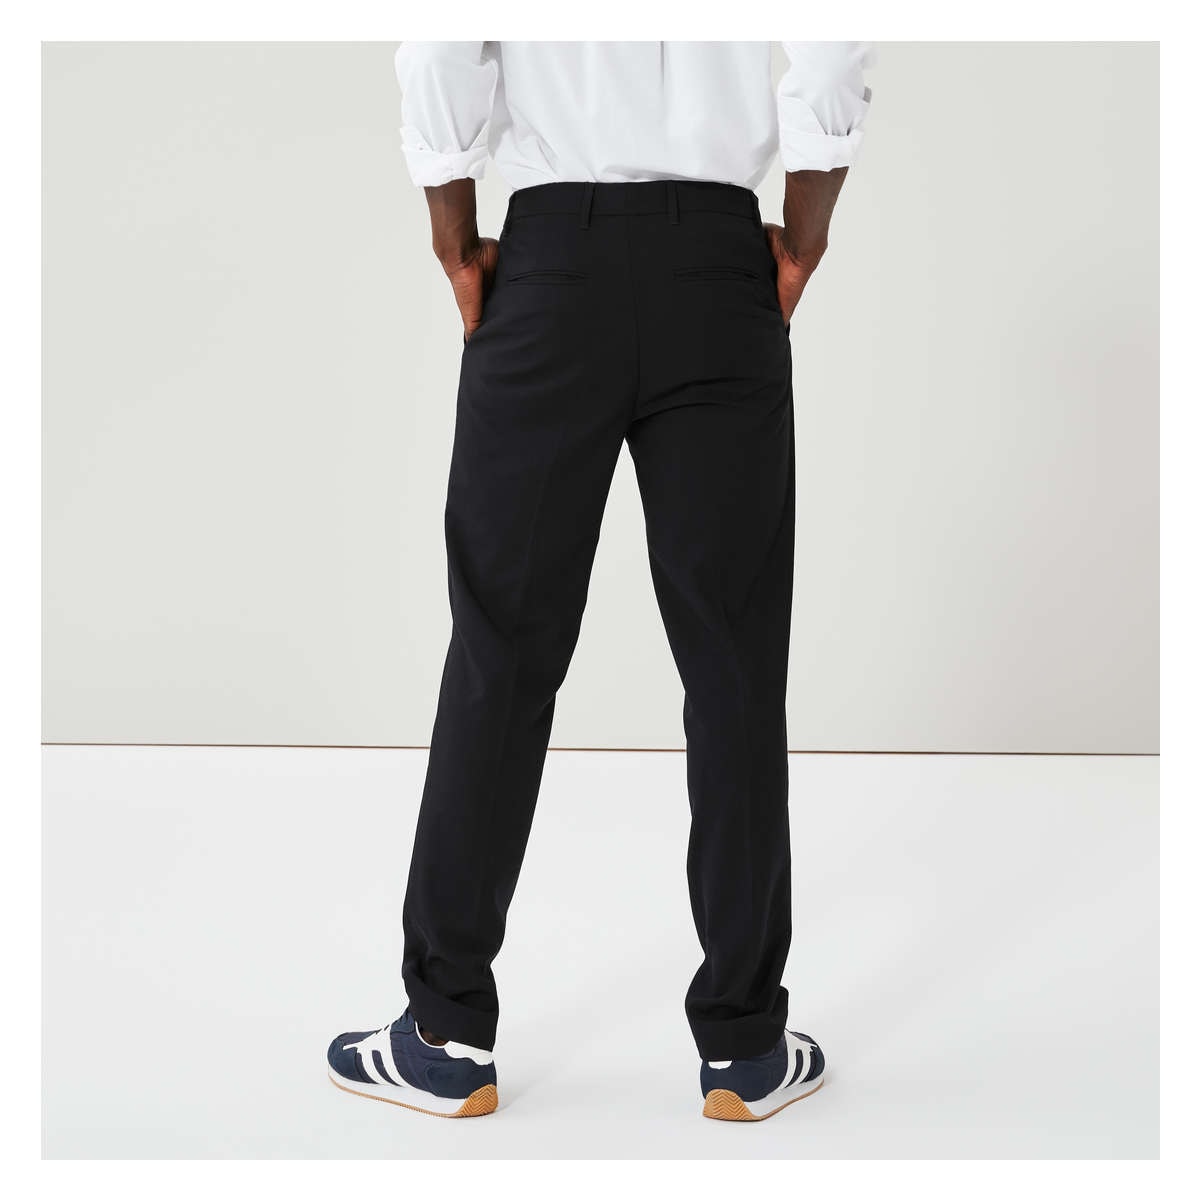 Men's Premium Fit Dress Pant in Black from Joe Fresh